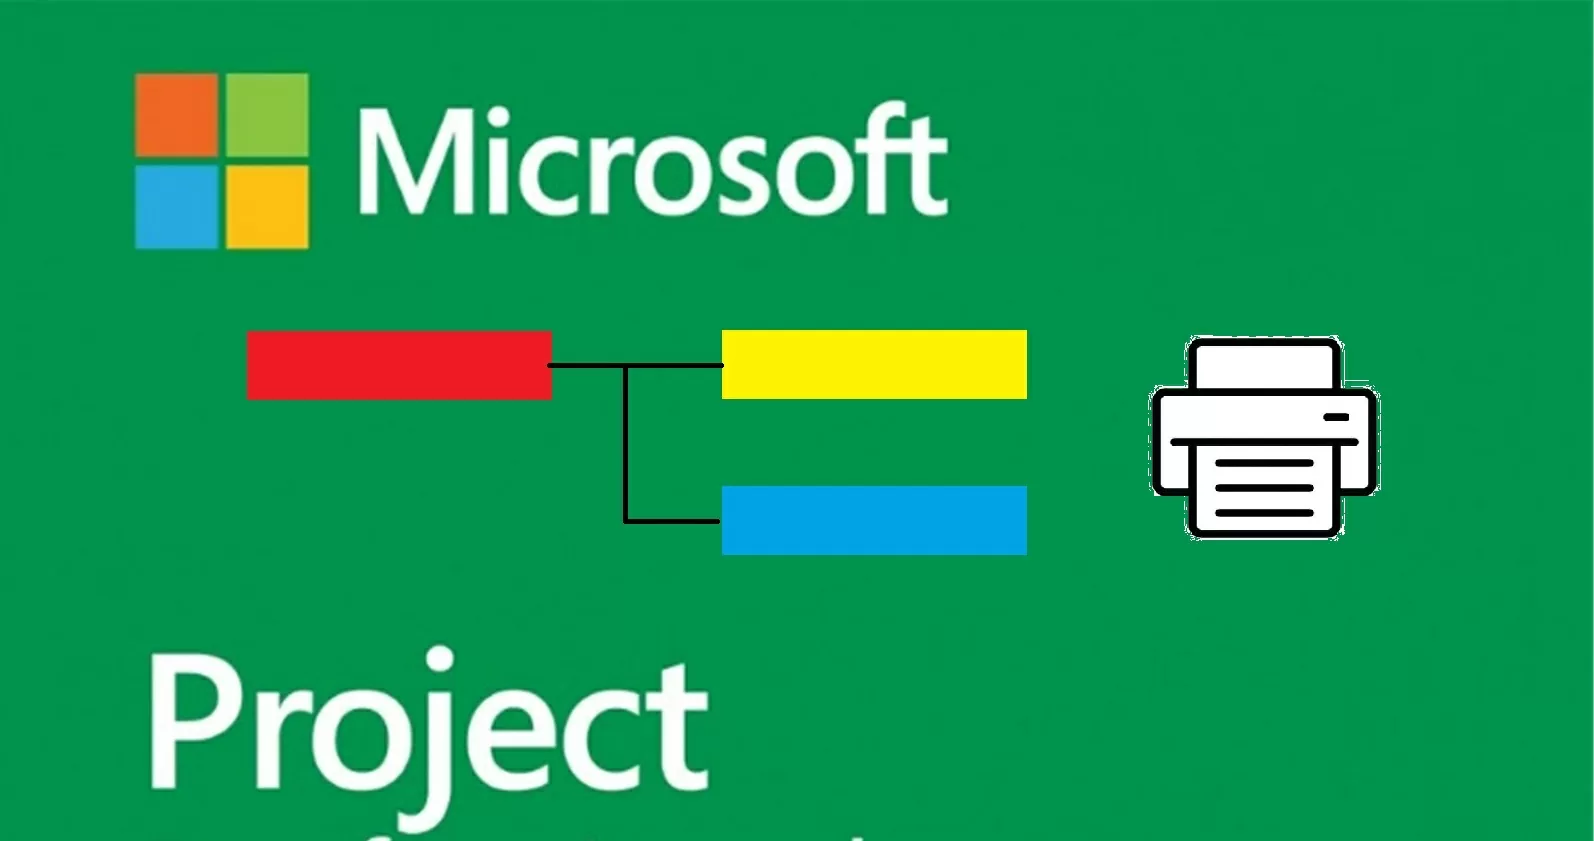 Come personalizzare la stampa del Gantt project in Microsoft Project